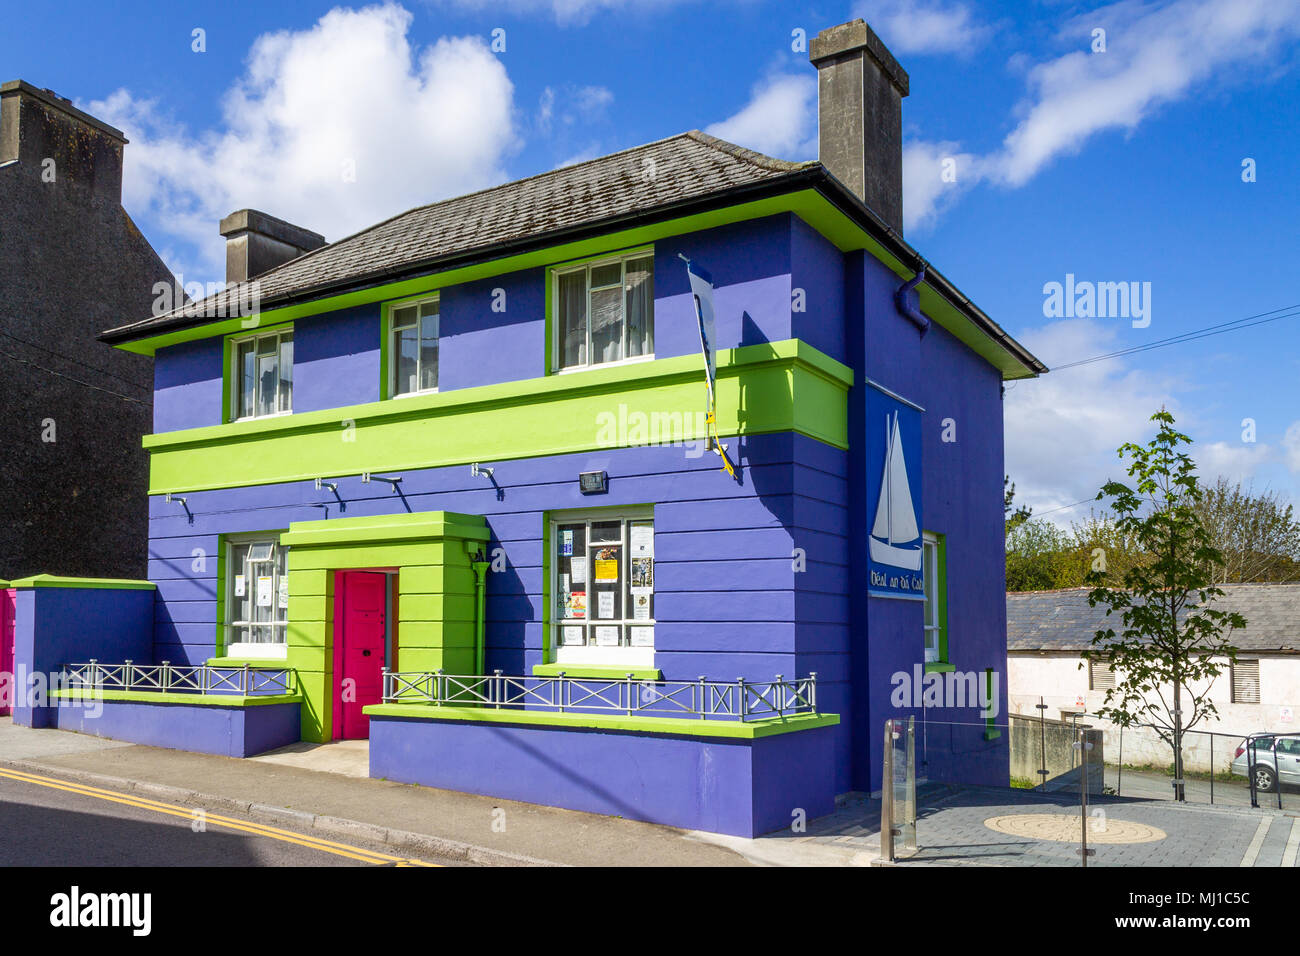 Bâtiment en briques de couleur ou de couleur vive bleu vif et vert , une ancienne maison debout dans le soleil de midi. Banque D'Images